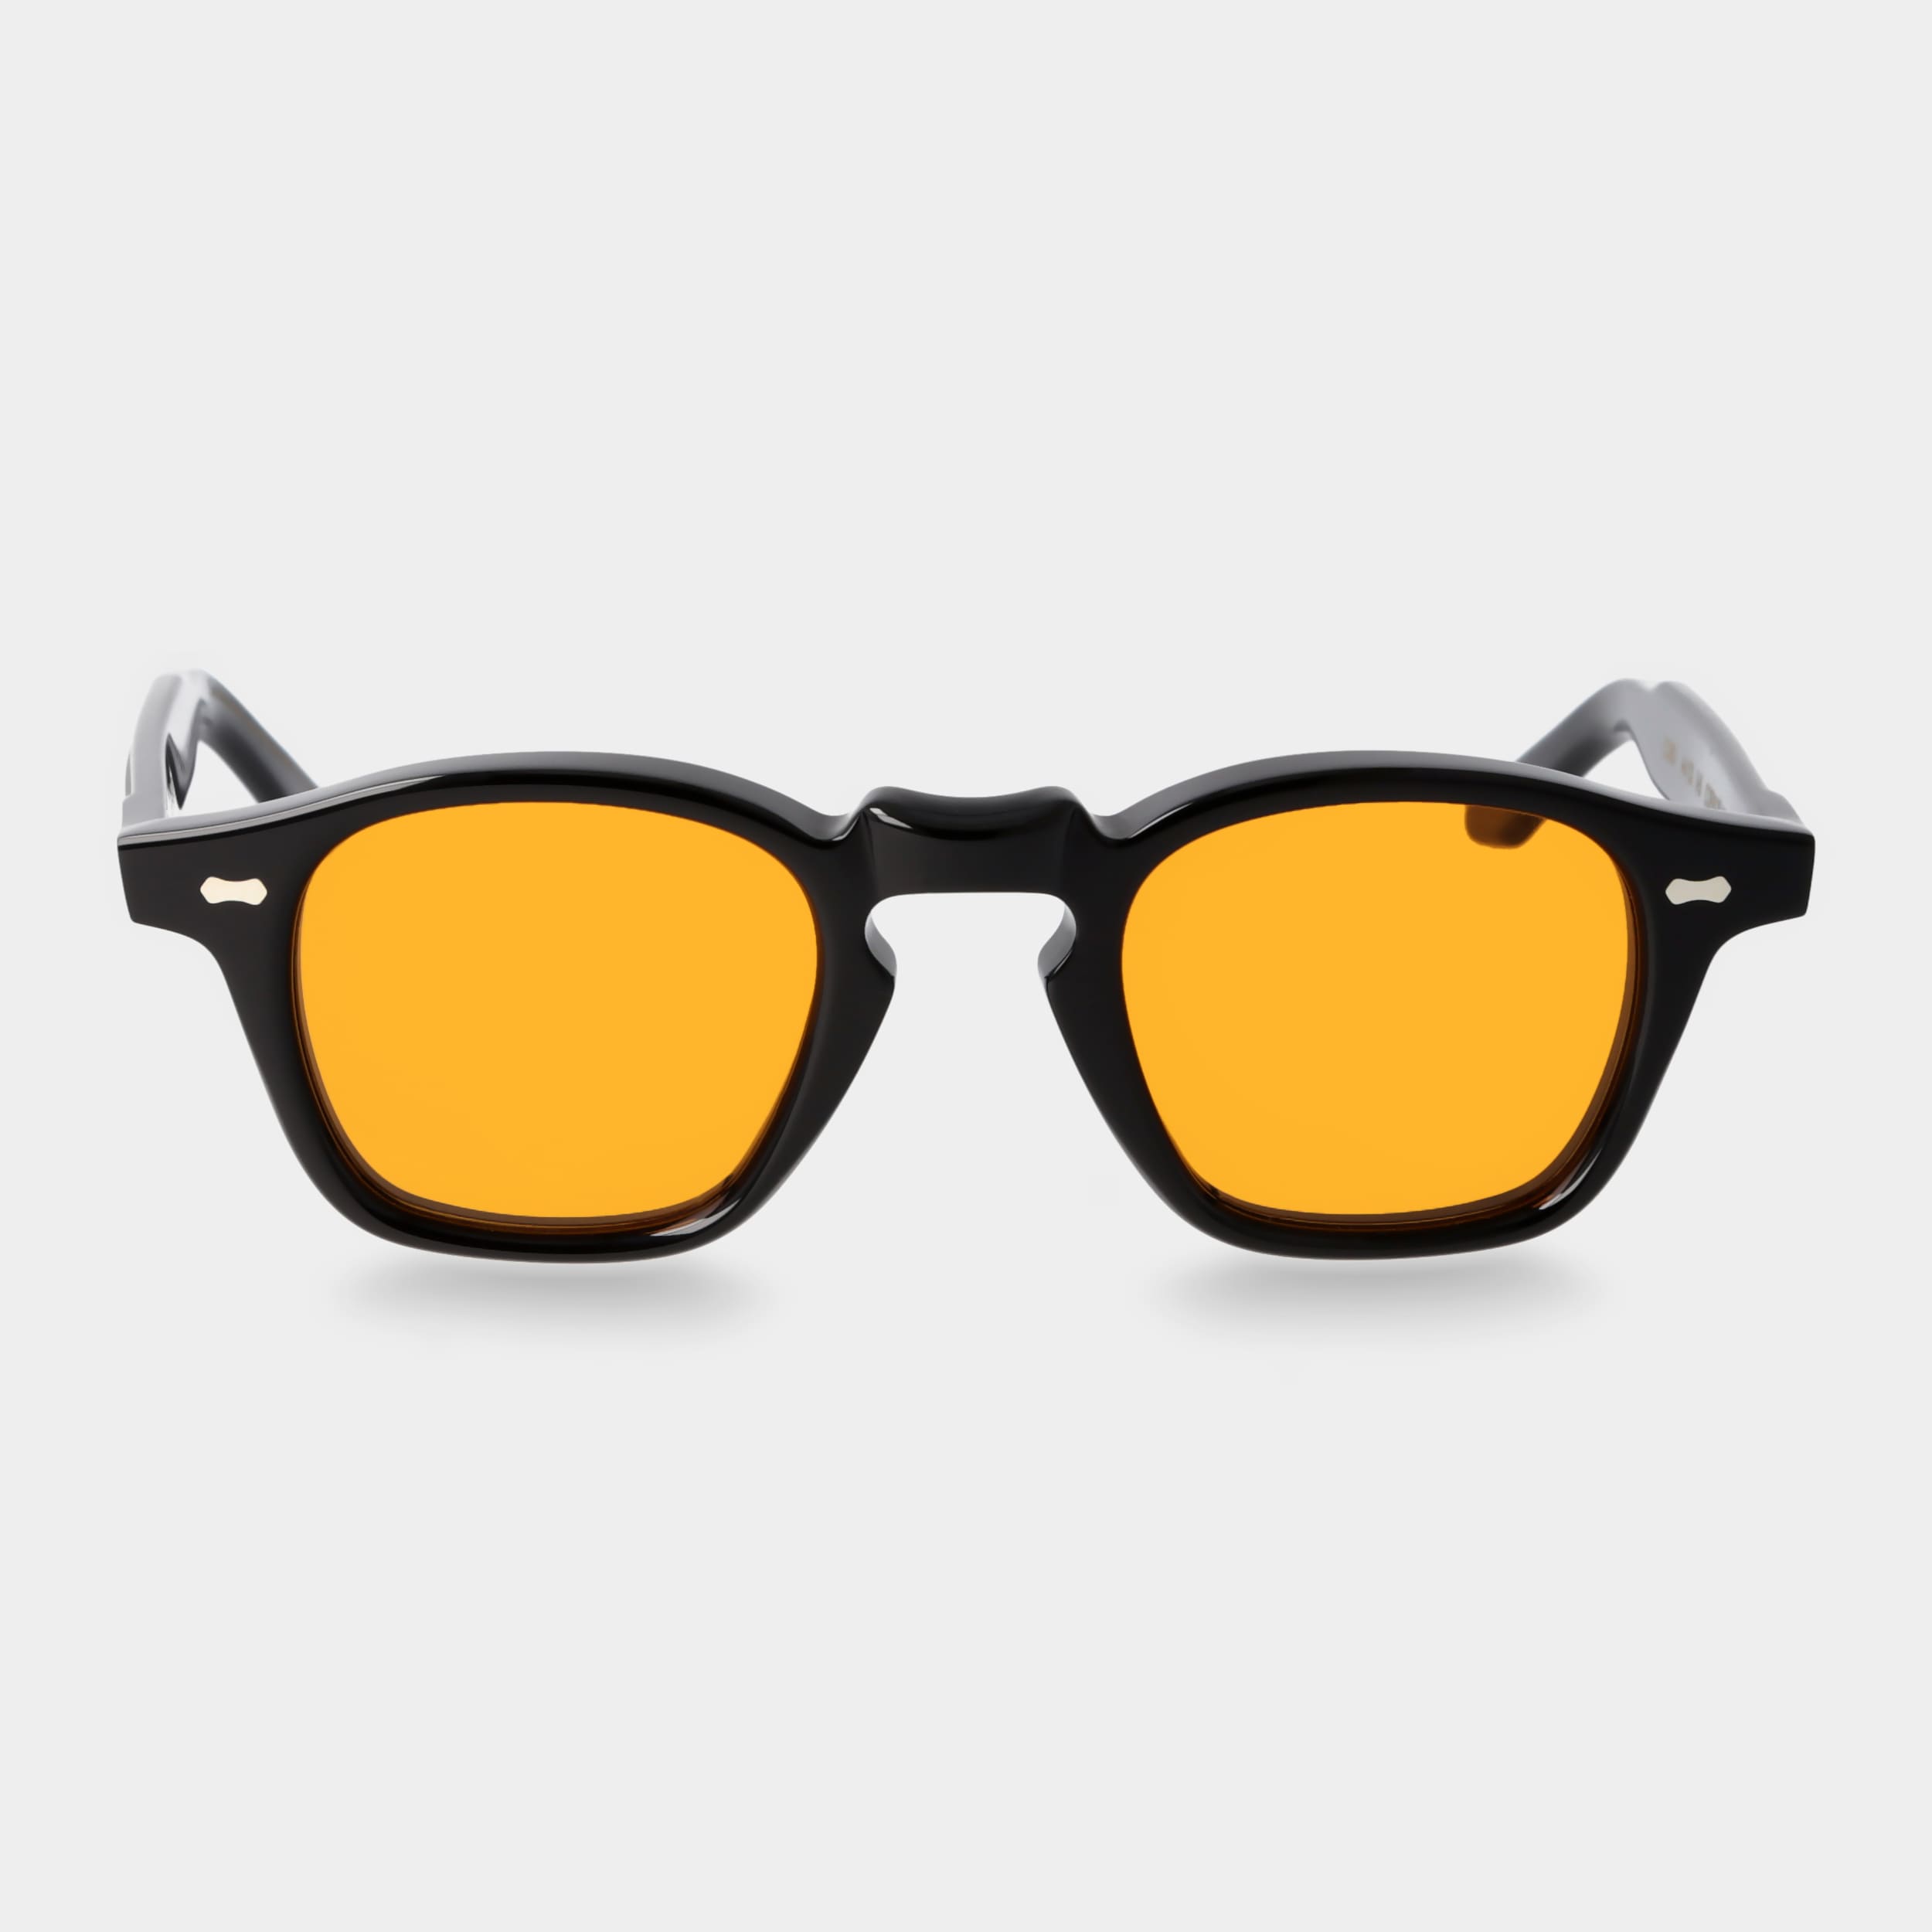 Schwarze Sonnenbrille mit Eyewear Gläsern: Cord | TBD orangefarbenen